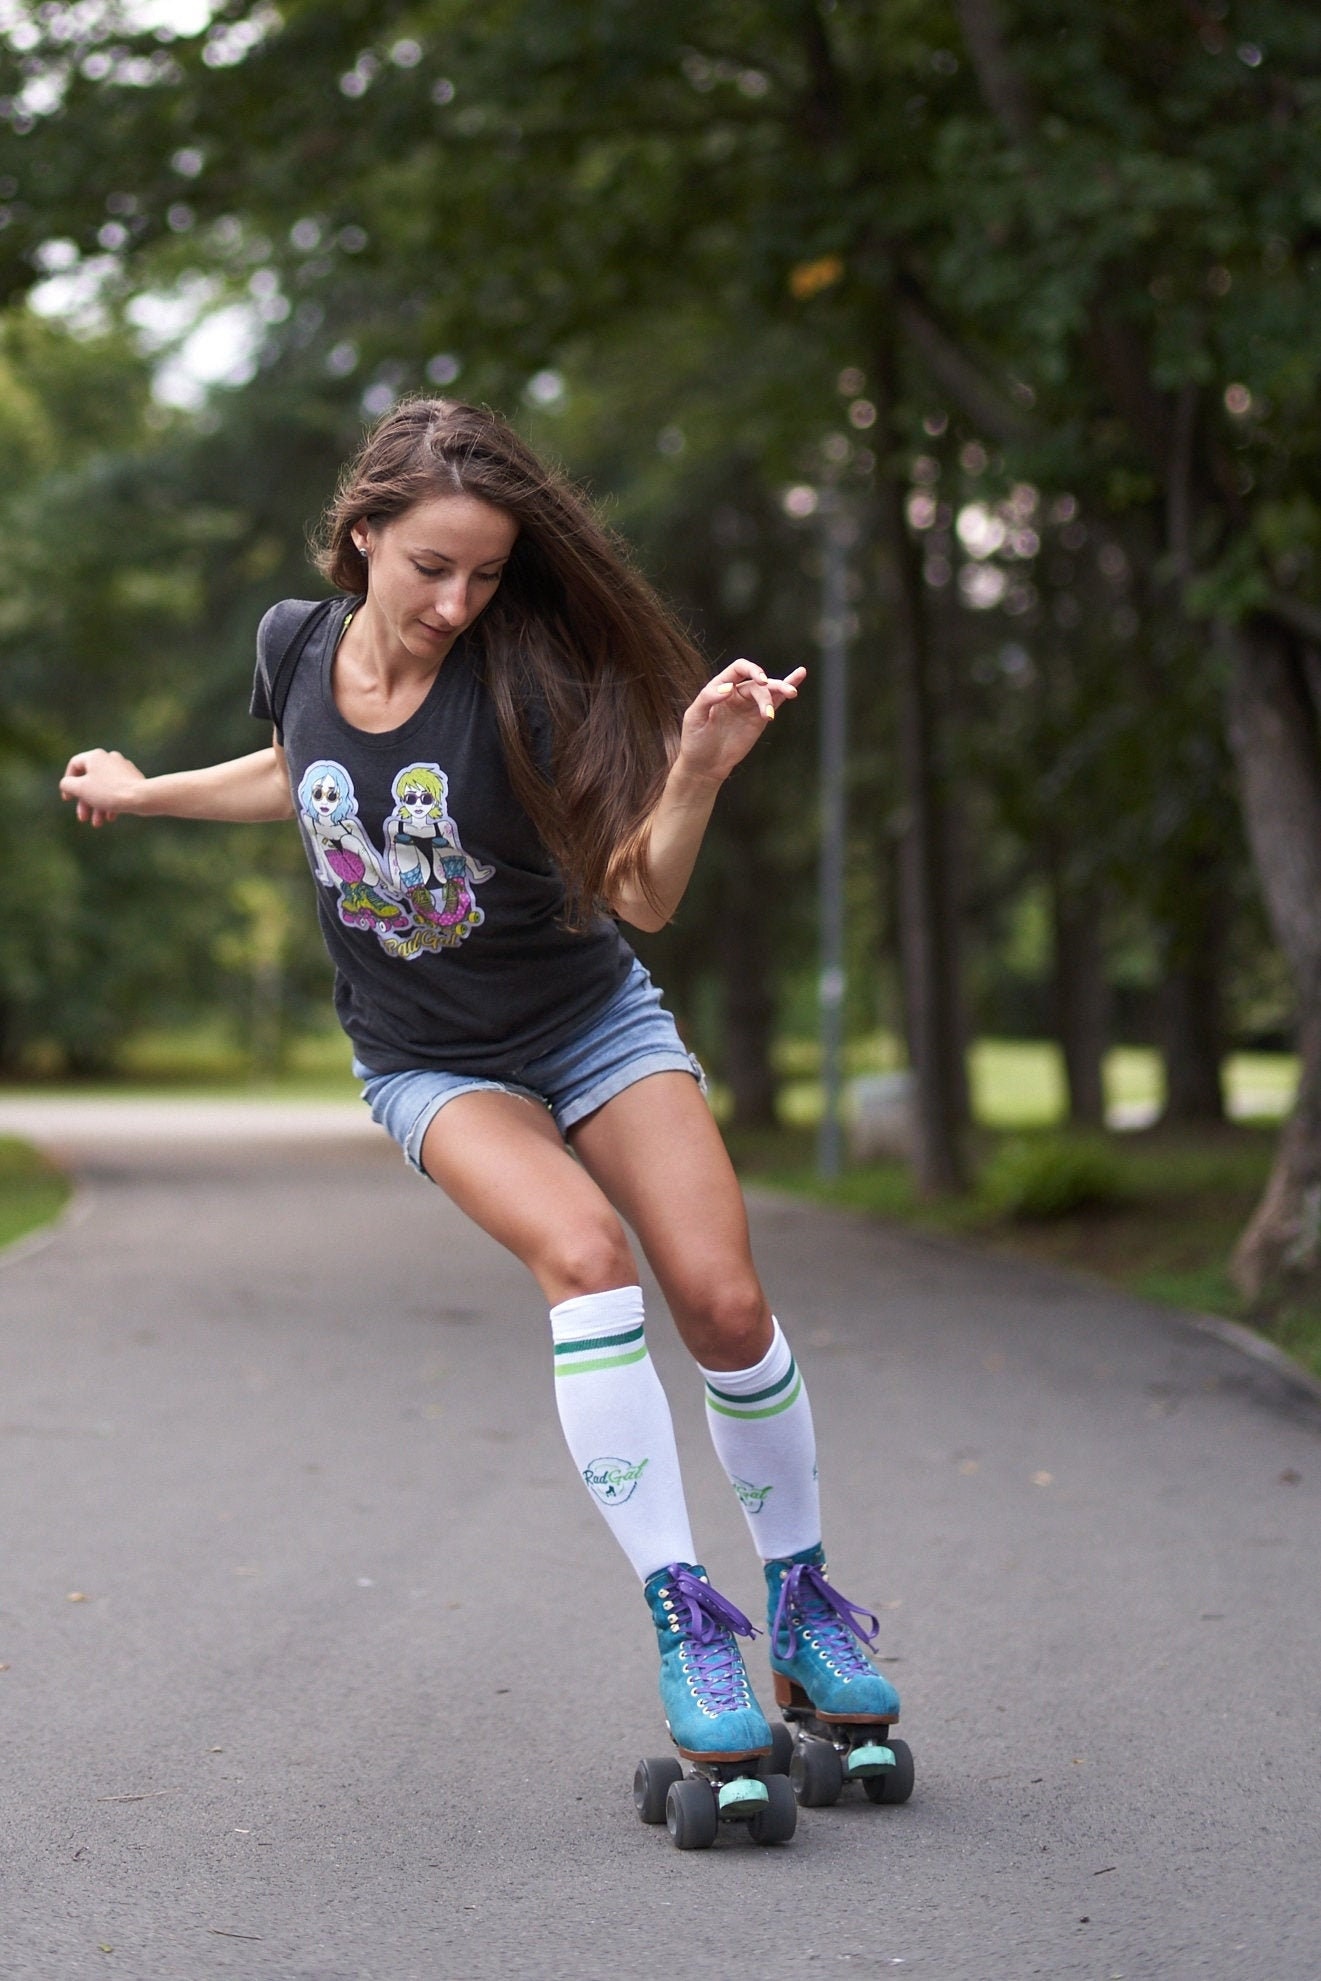 Skate Socks Roller Skate Accessories Knee High Socks Roller 